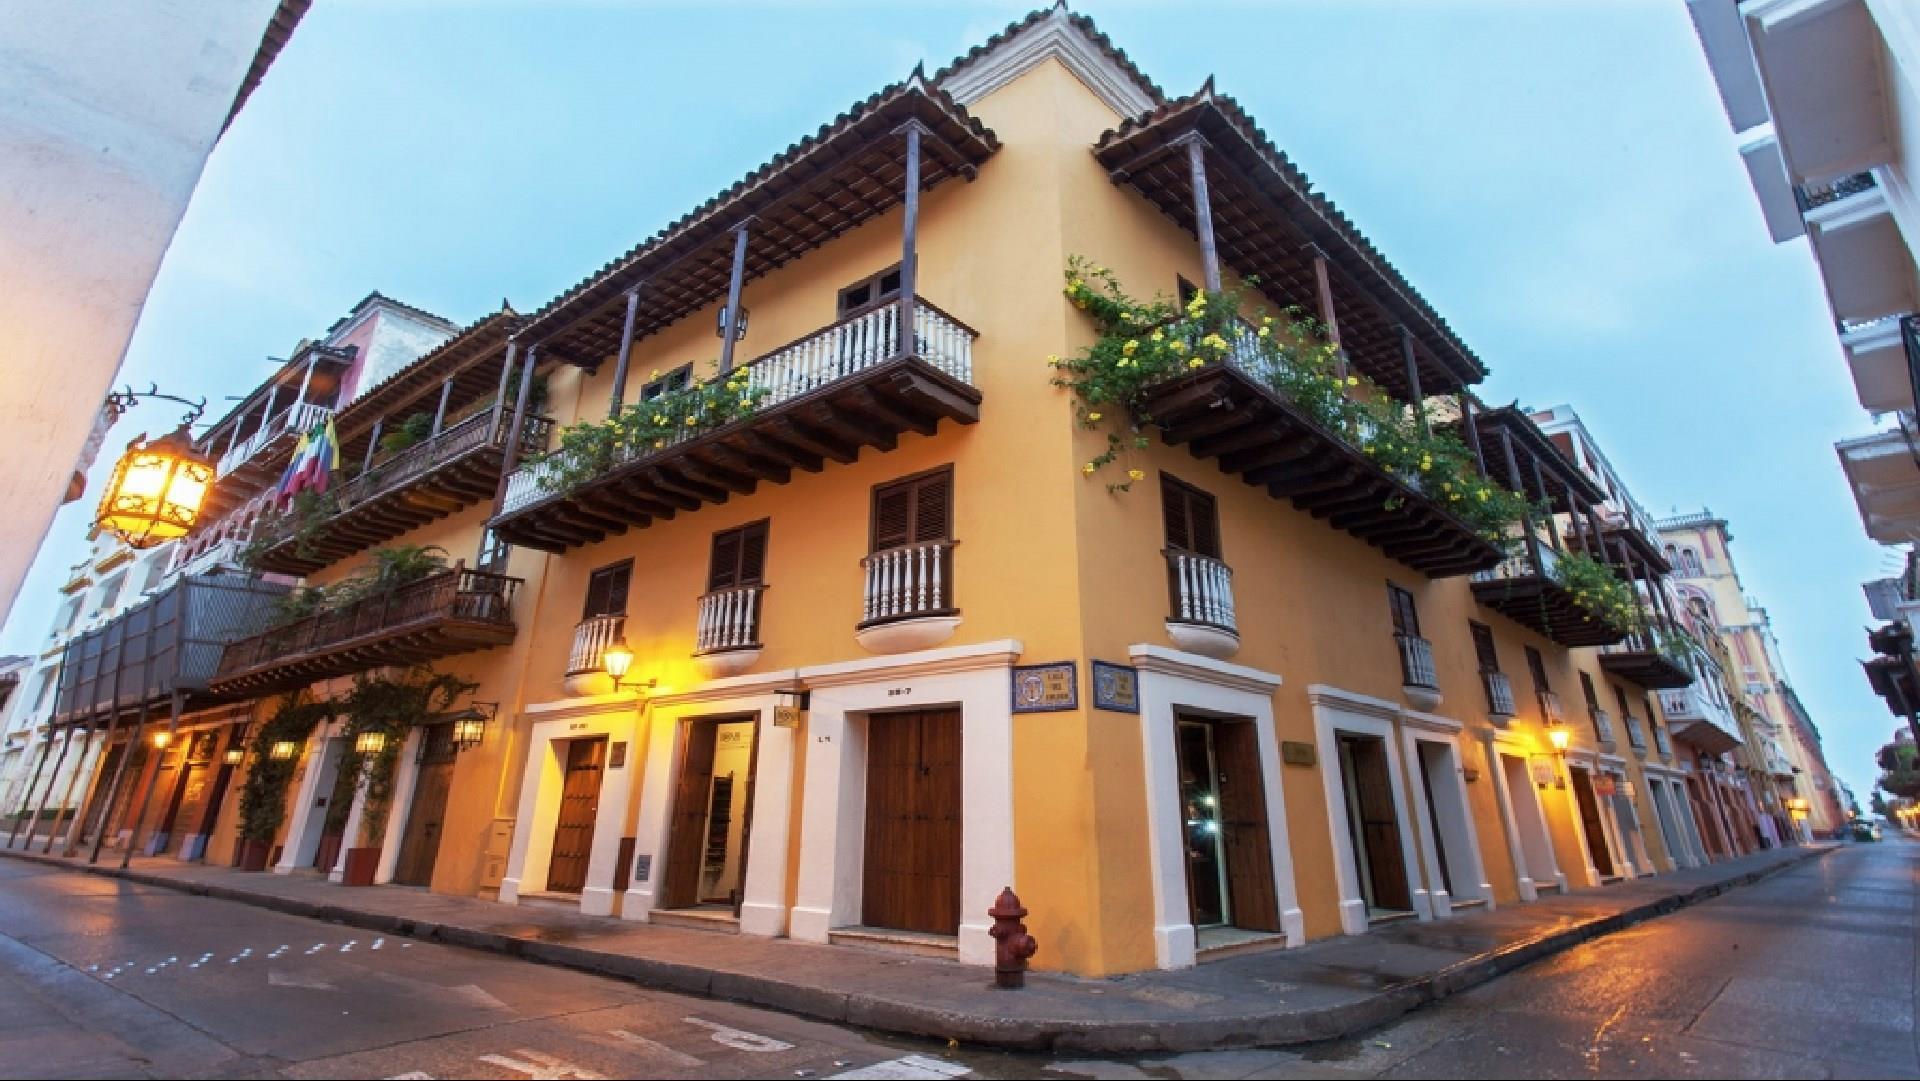 Hotel Casa del Coliseo in Cartagena, CO